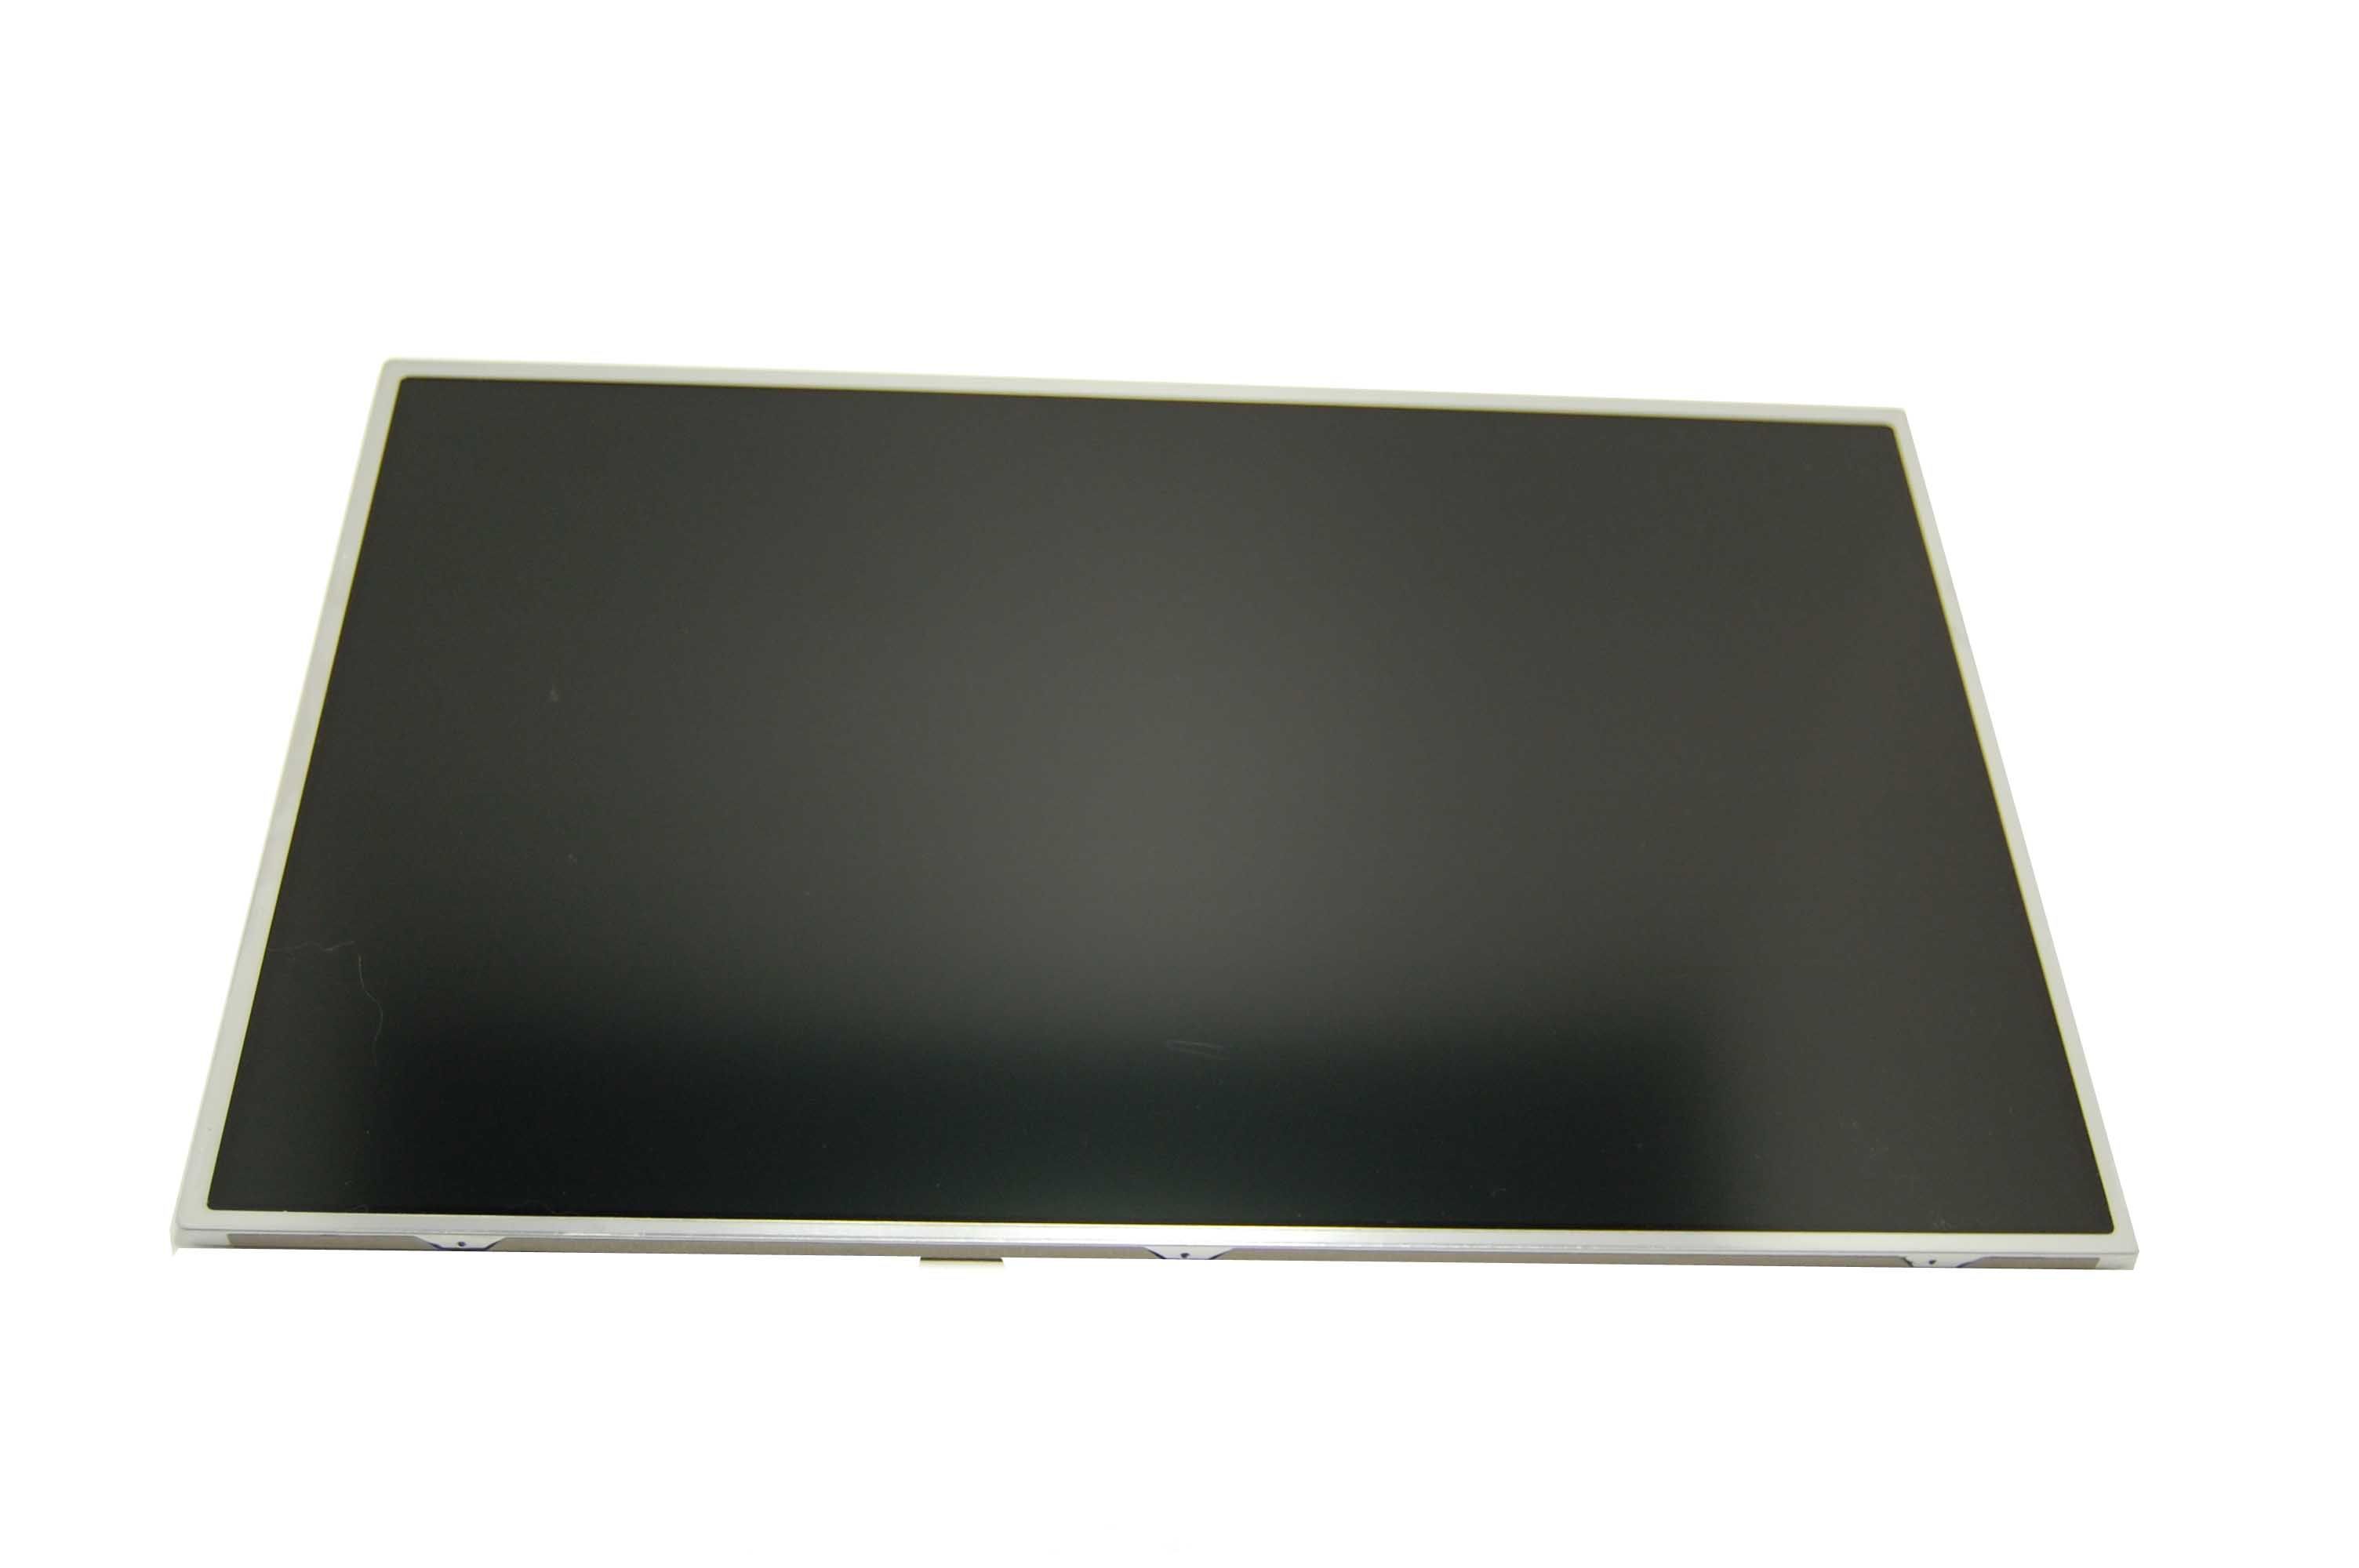 LG LP171WU4 (TL) (A3) Display LCD 17,1&quot; 1920x1200 LED matt